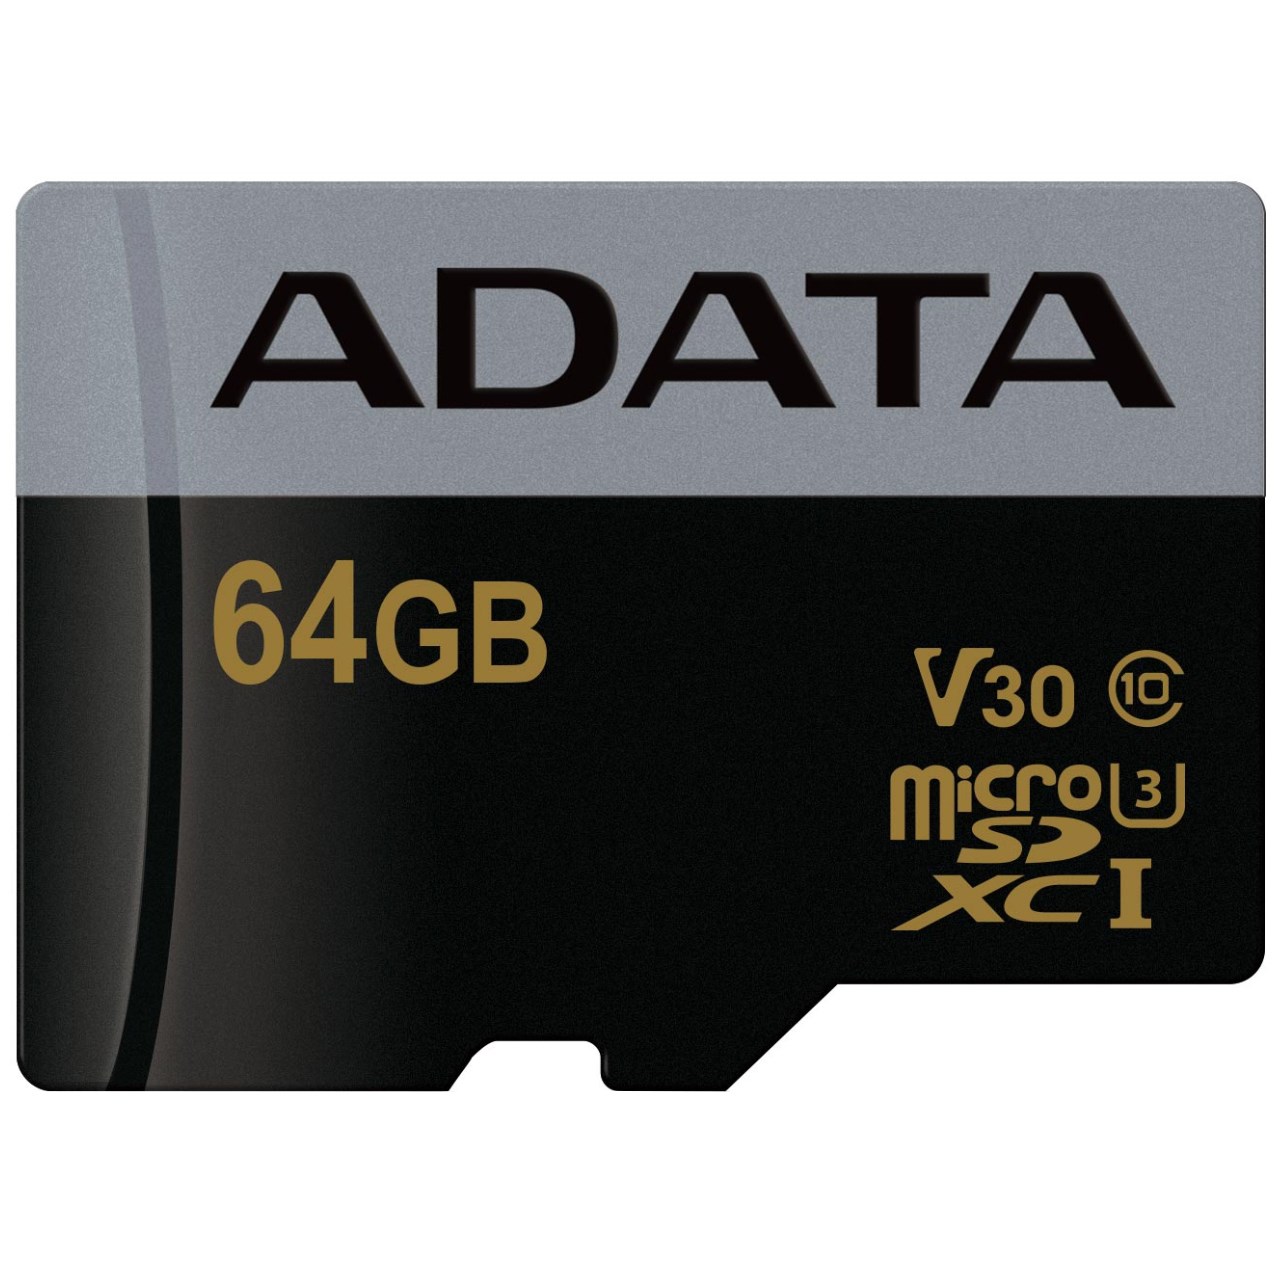 کارت حافظه microSDXC ای دیتا مدل Premier Pro V30 کلاس 10 استاندارد UHS-I U3 سرعت 95MBps ظرفیت 64 گیگابایت